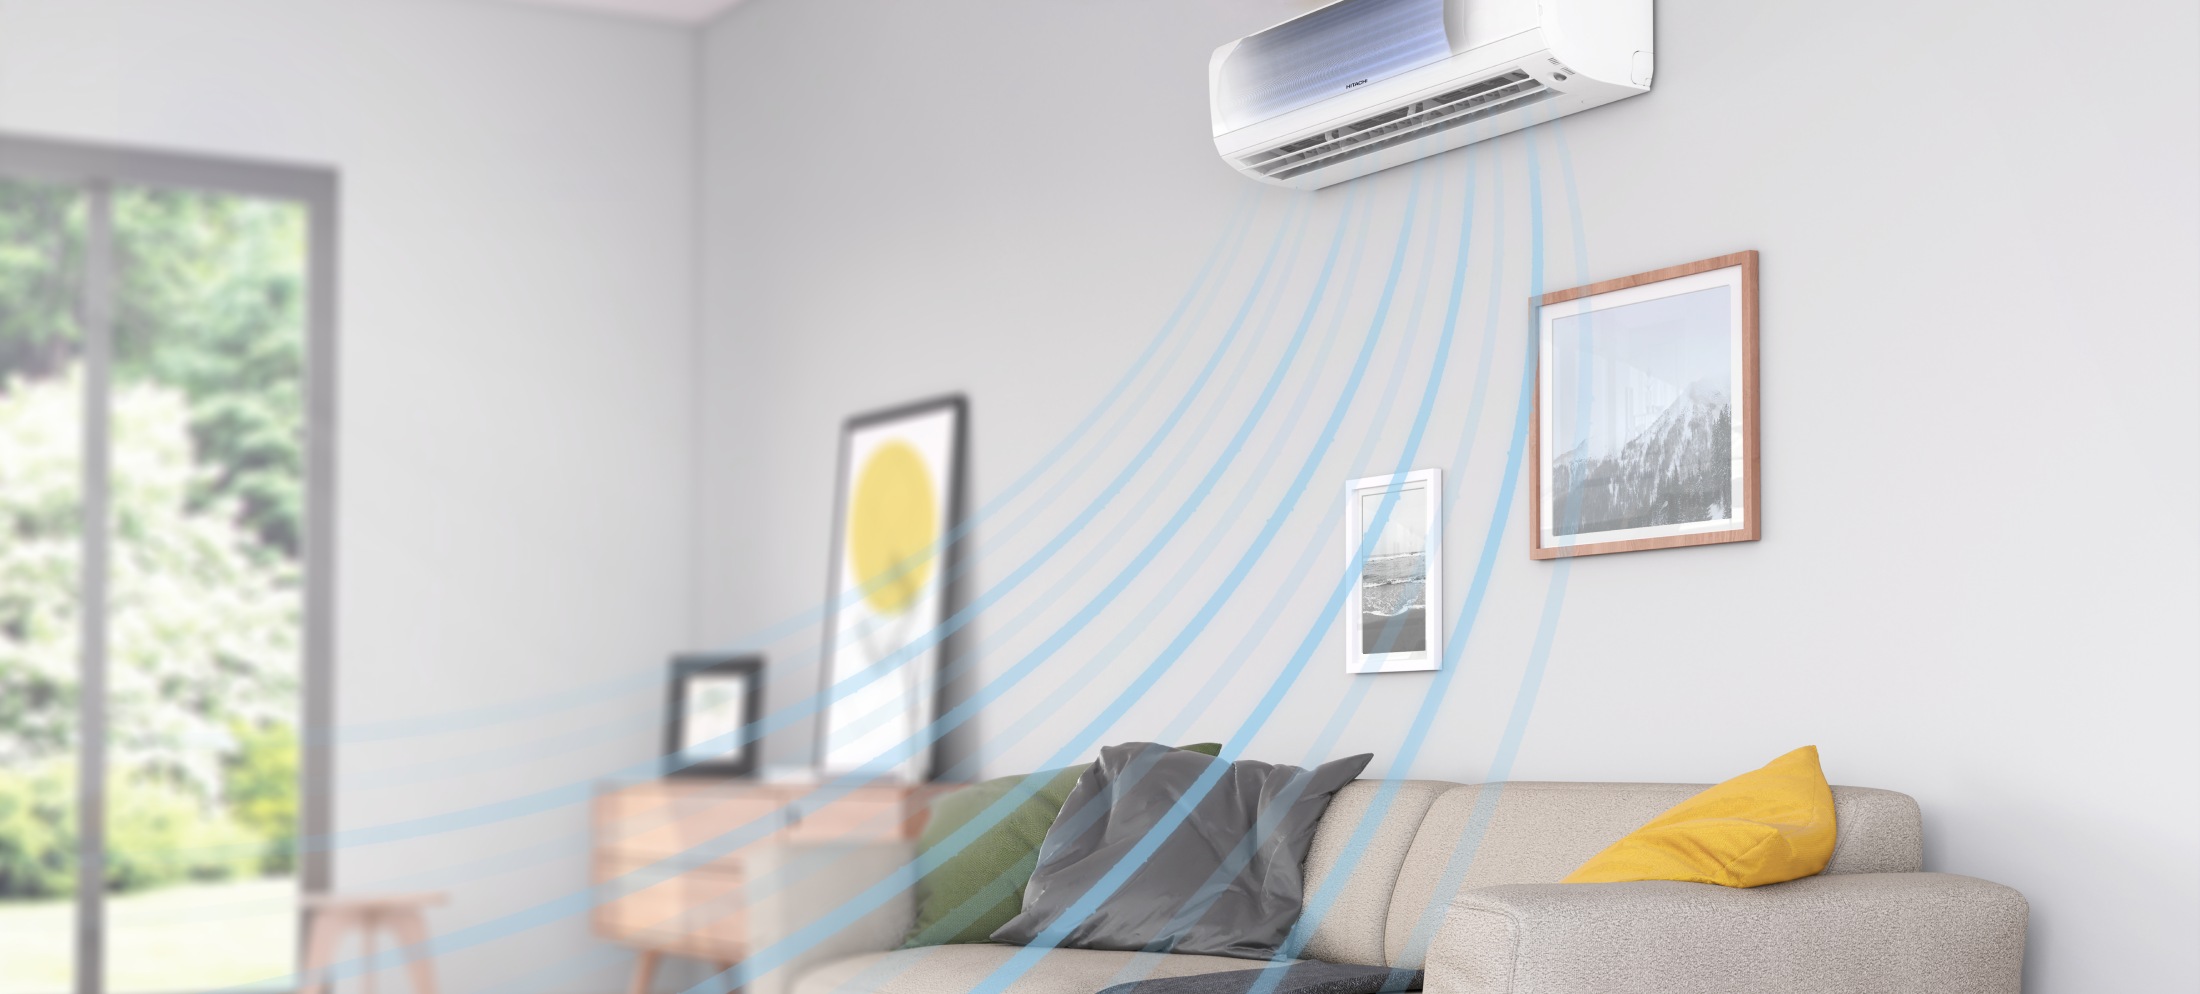 Cách điều hòa không khí hoạt động | Hitachi Cooling & Heating | hitachiaircon.vn